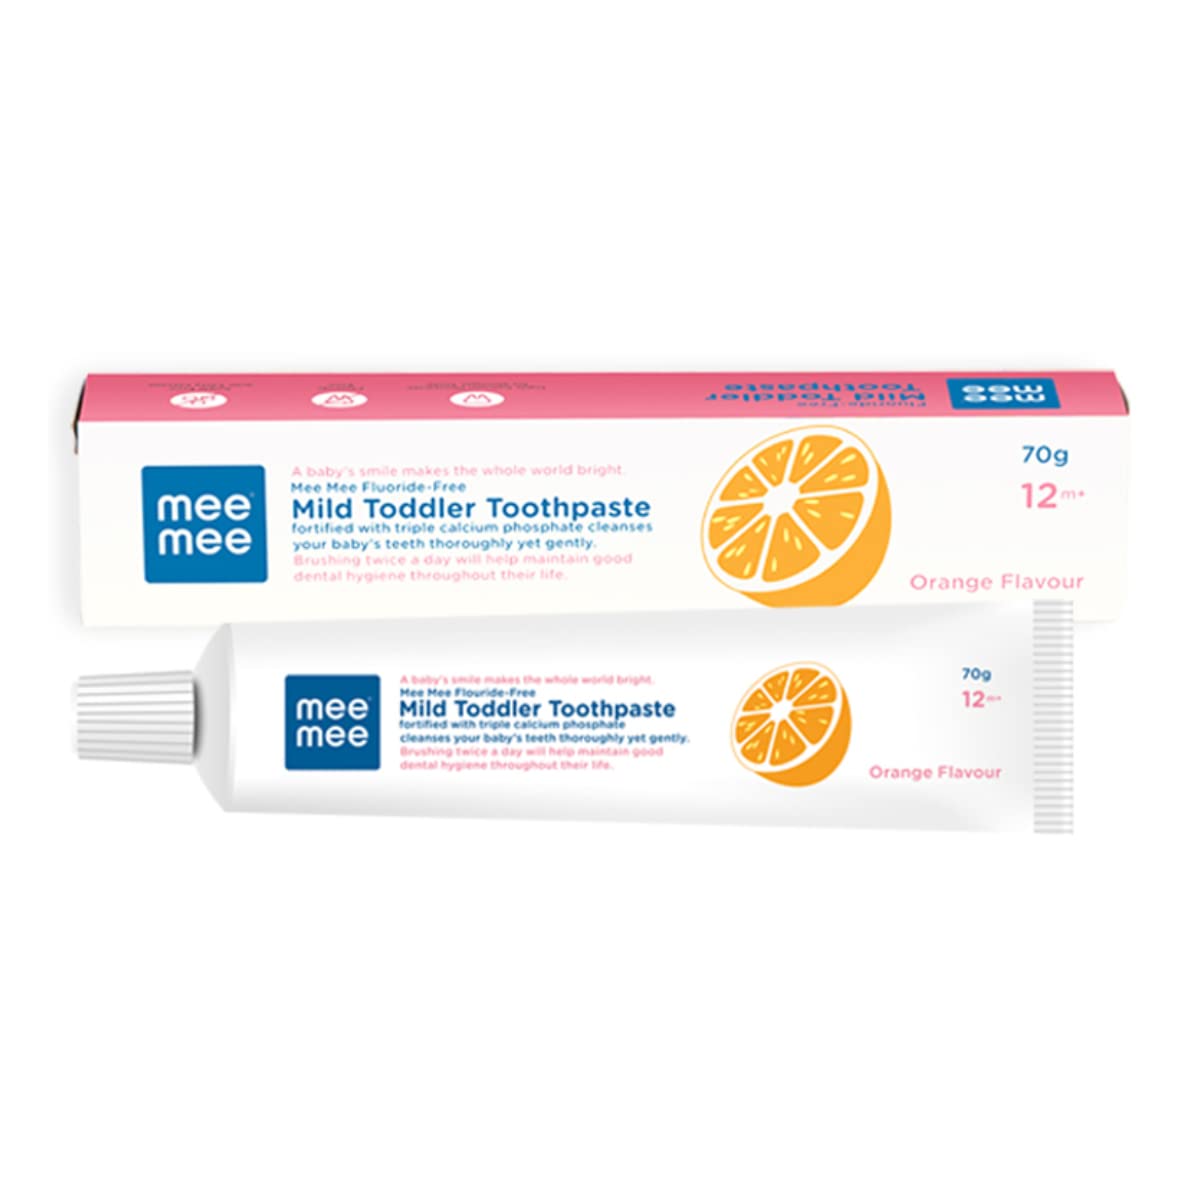 Mee Mee Fluoride-Free Mild Toddler Toothpaste - Orange Flavor - Distacart